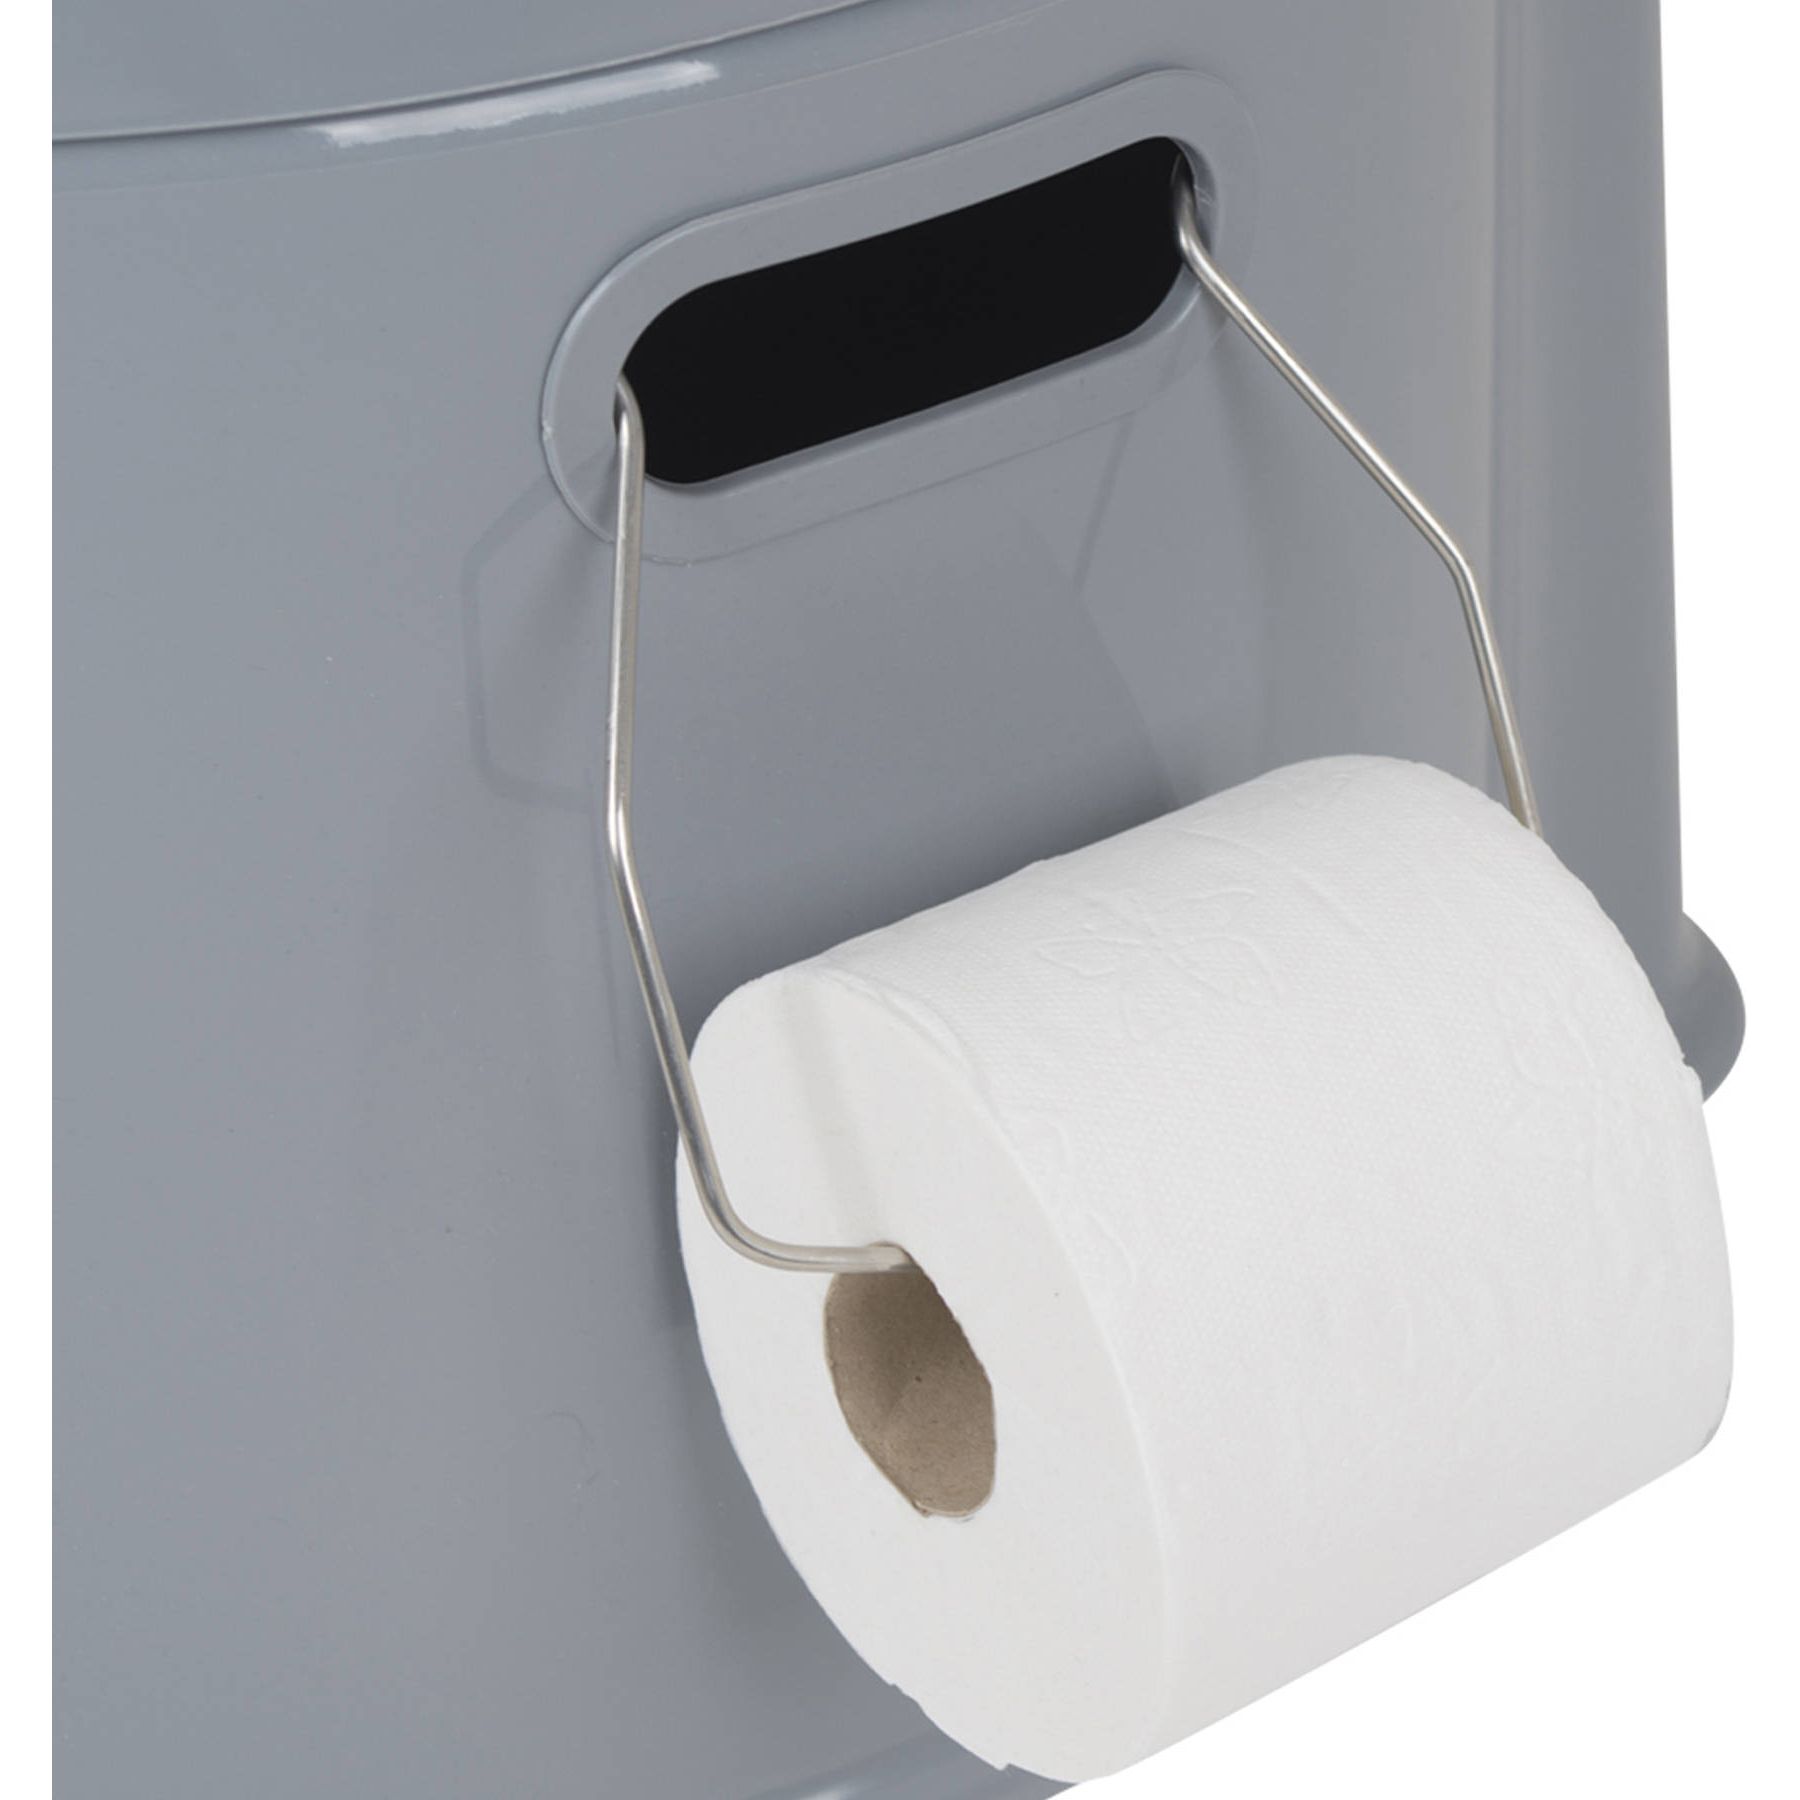 Біотуалет Bo-Camp Portable Toilet 7 л сірий (5502800) - фото 11